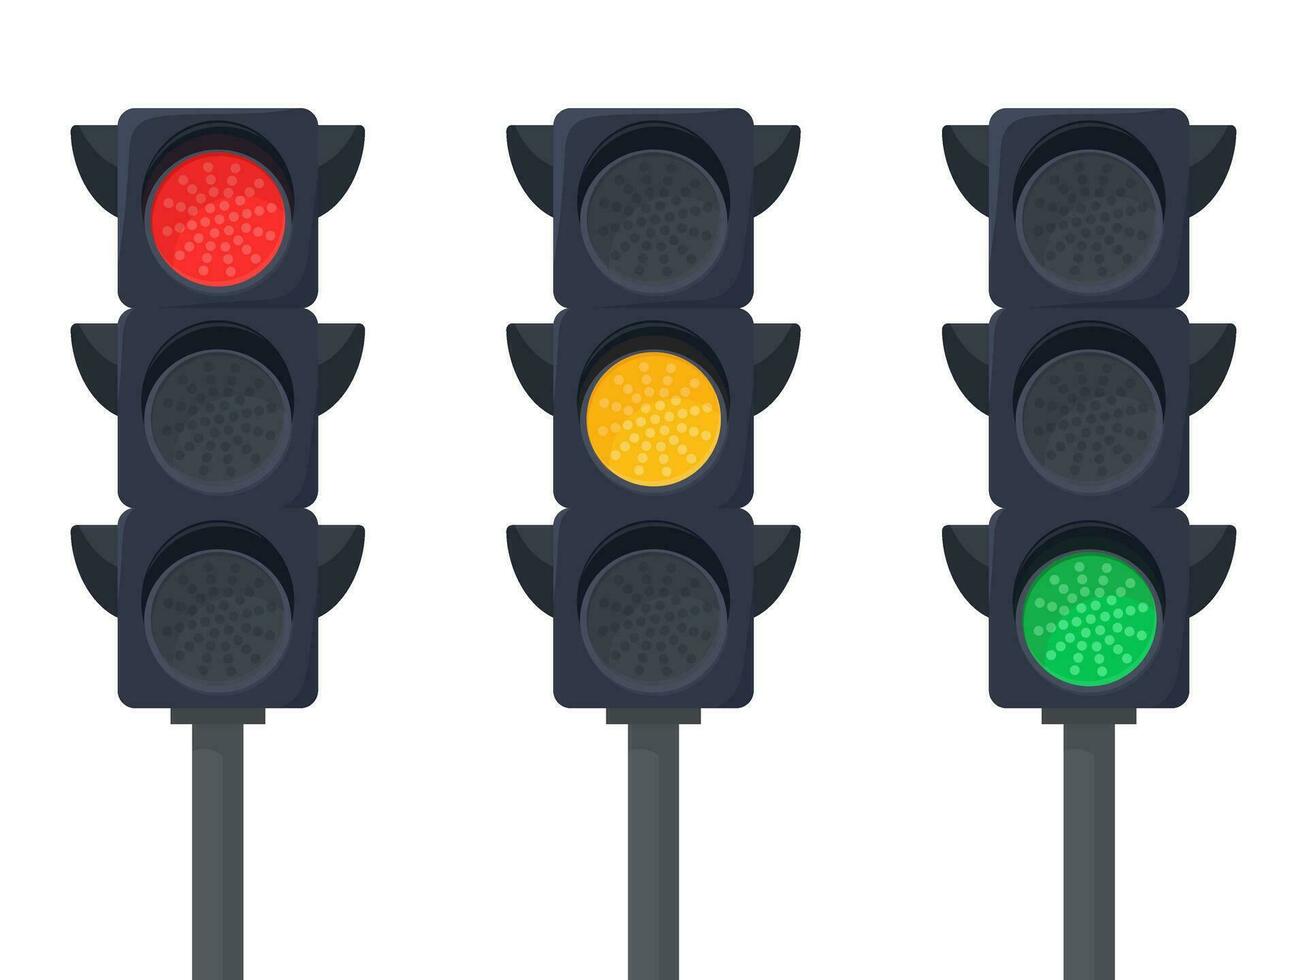 der Verkehr Beleuchtung mit drei anders Signale - - Rot, Gelb, und Grün - - isoliert Vektor Illustration auf Weiß Hintergrund.